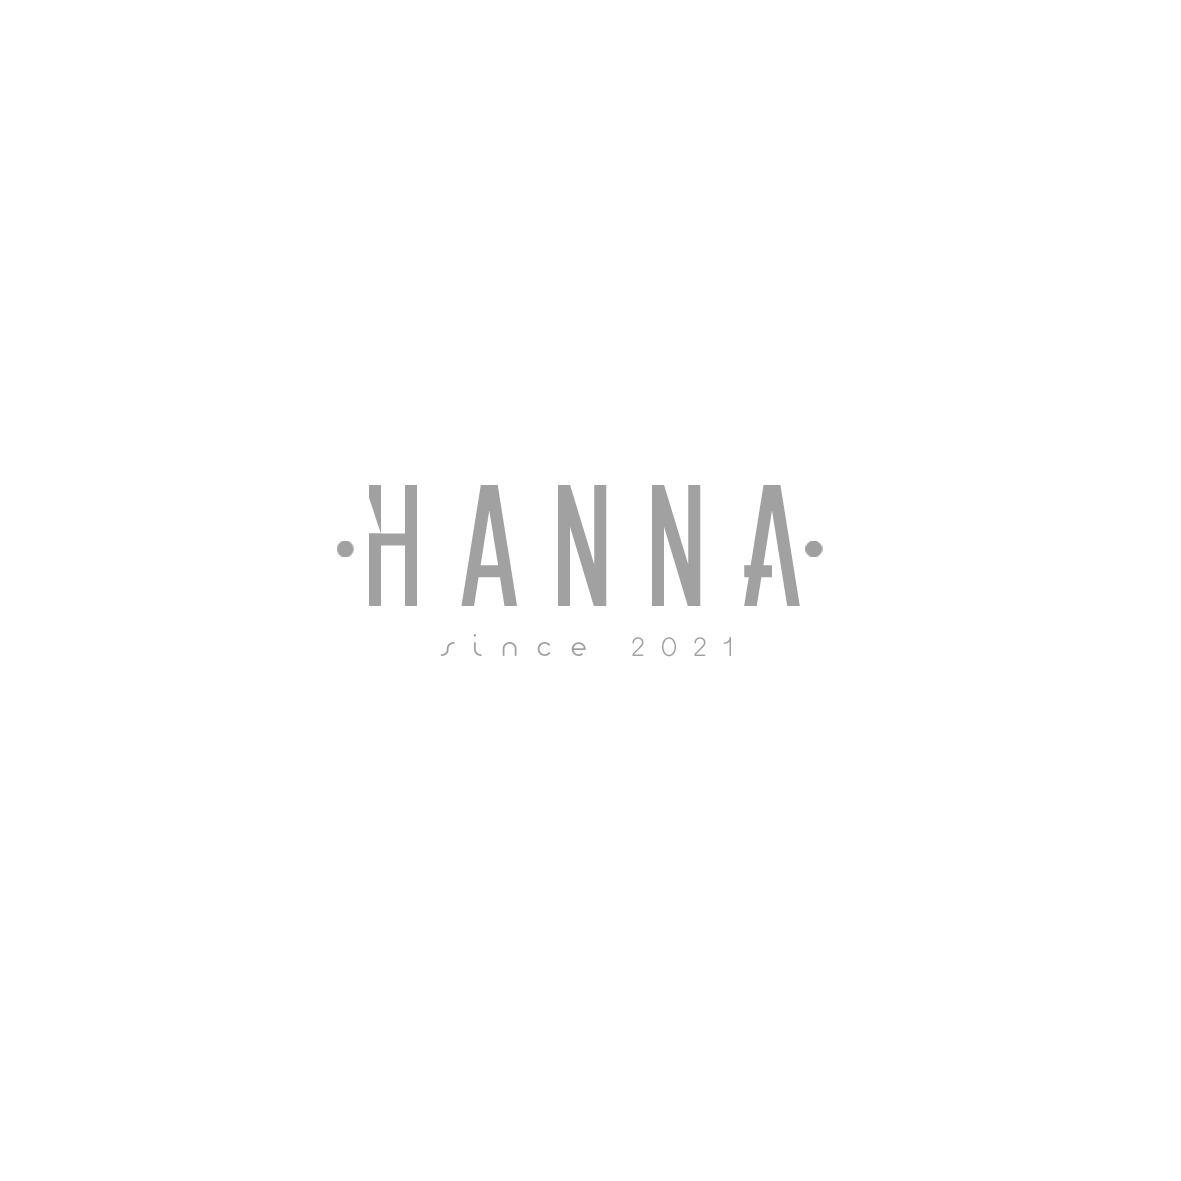 hanna_logo_text_nahled_3